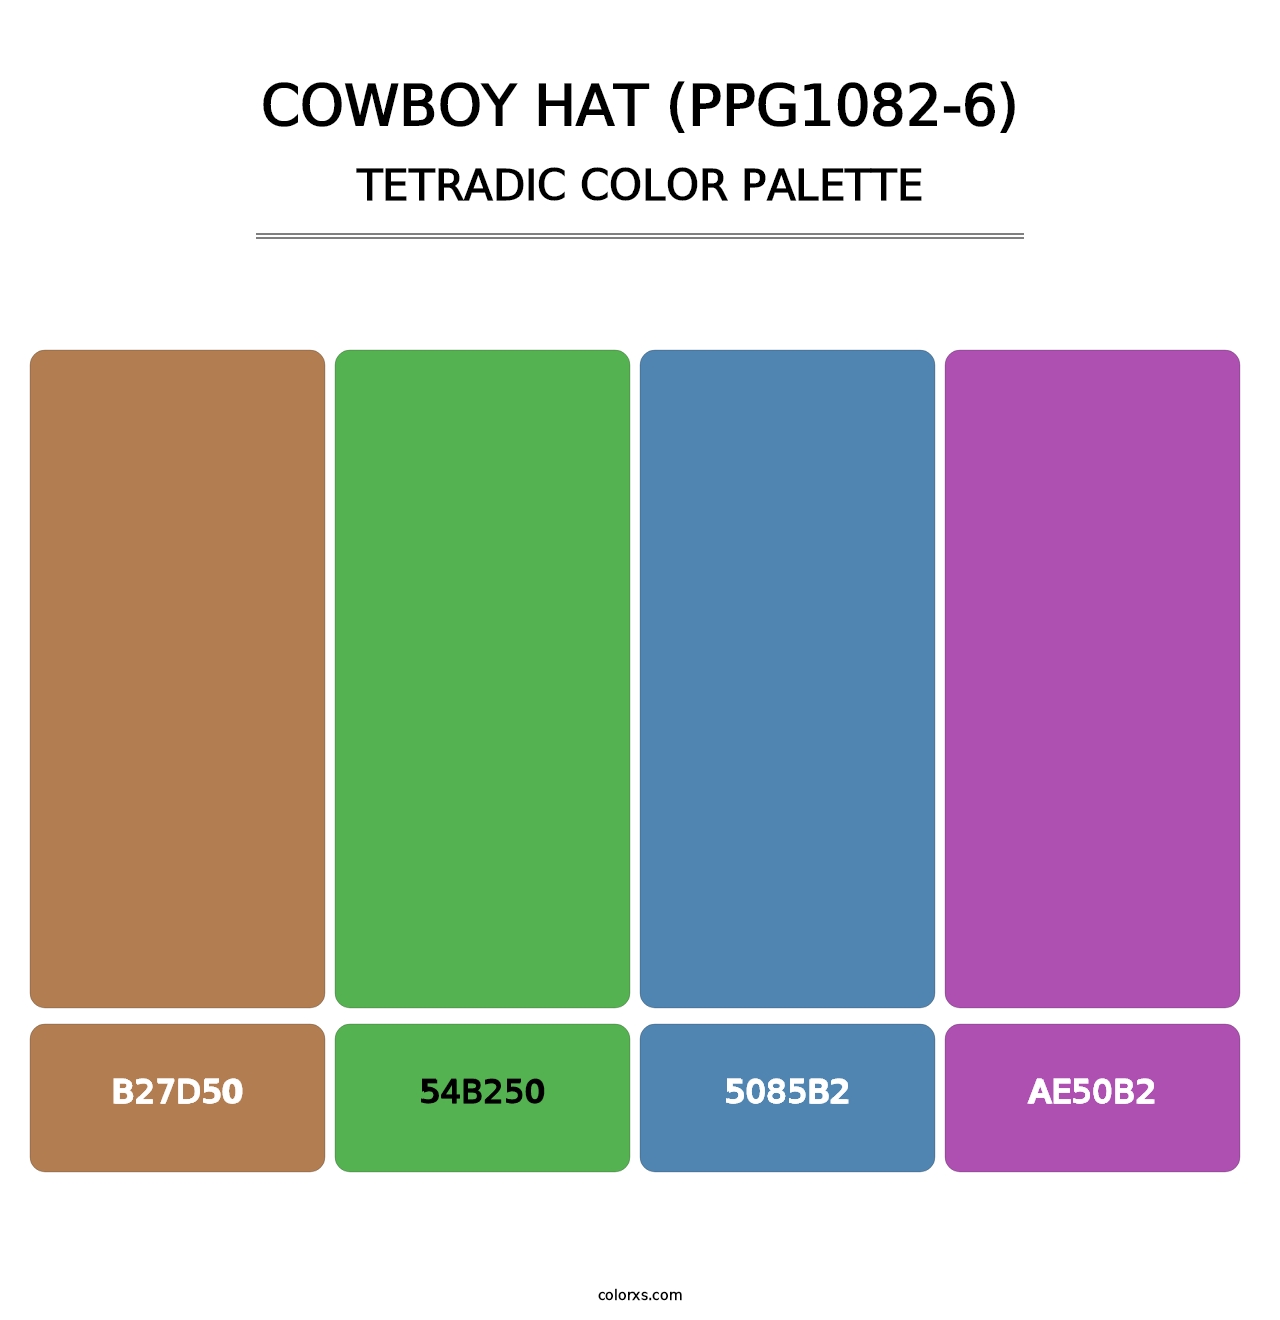 Cowboy Hat (PPG1082-6) - Tetradic Color Palette